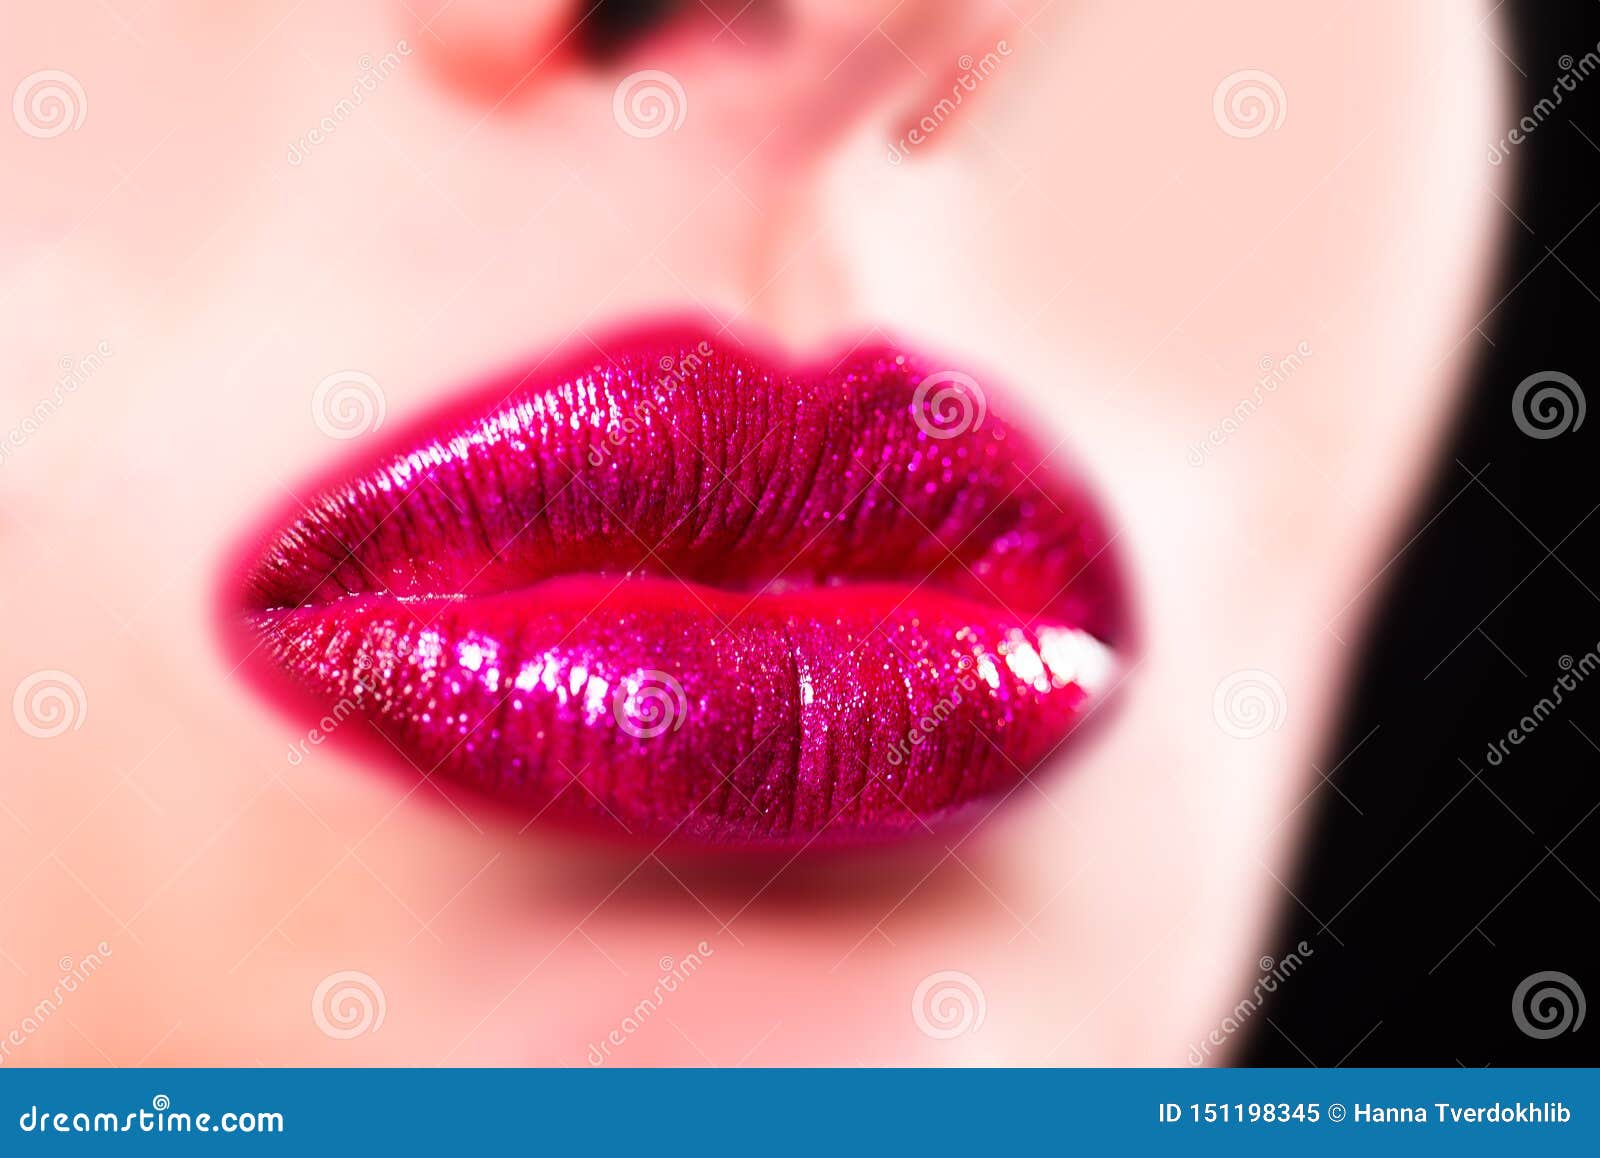 Labbra Sensuali Di Bellezza Bello Labbro E R R Immagine Stock Immagine Di Trucco Modo 151198345